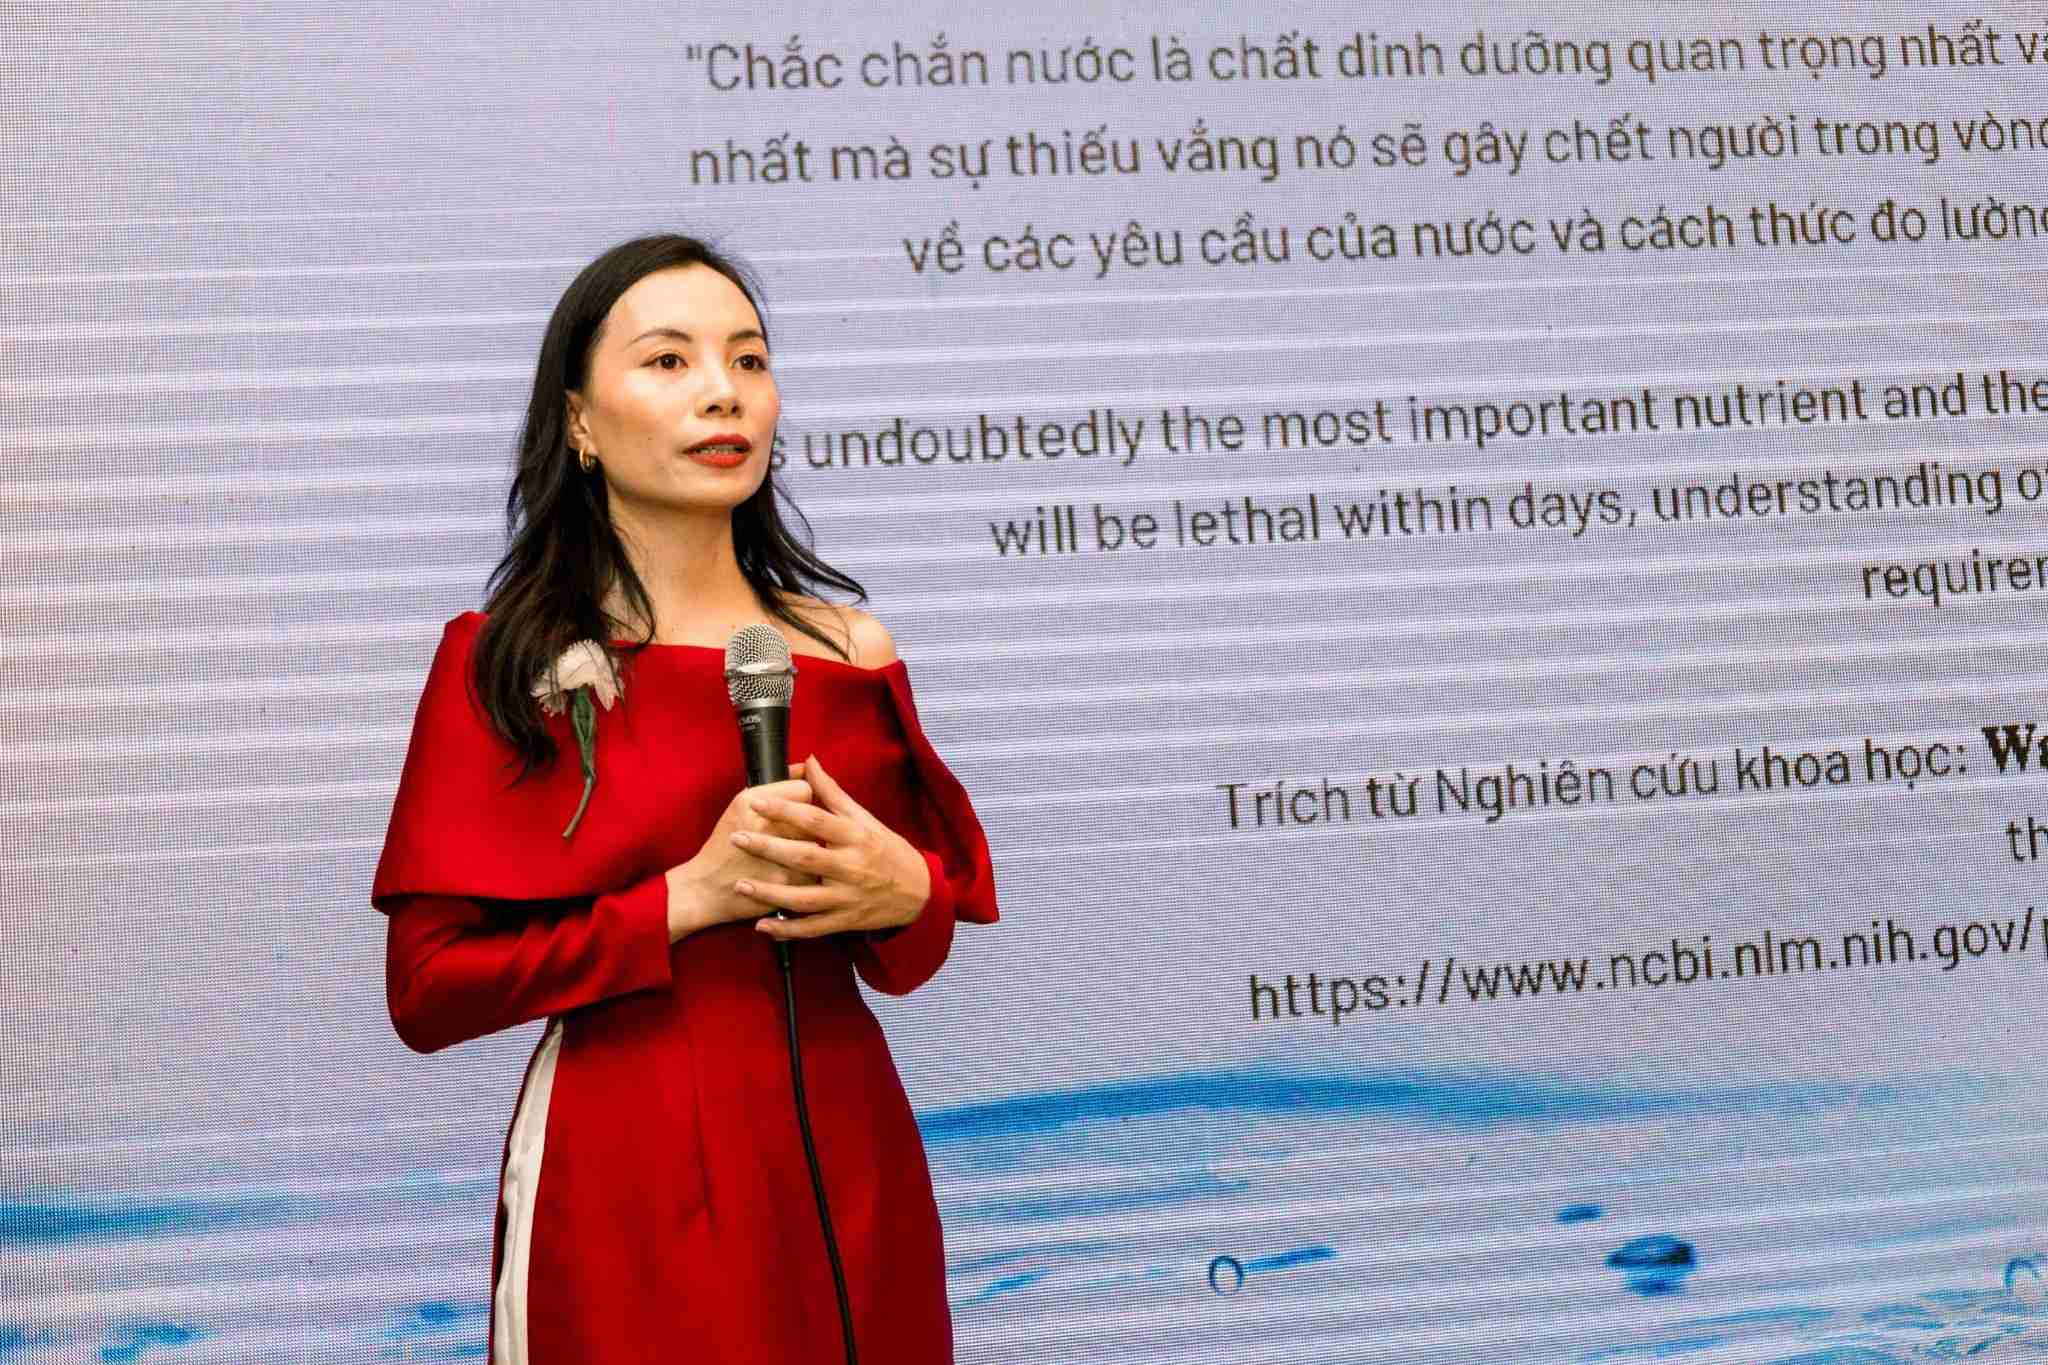 Bà Nguyễn Thị Minh Đăng, CEO công ty CP Koro chia sẻ về báo cáo khoa học “Nước từ trường - Những thành tựu nghiên cứu khoa học và bước đầu ứng dụng trong việc nâng cao sức khỏe tại công ty Koro”.